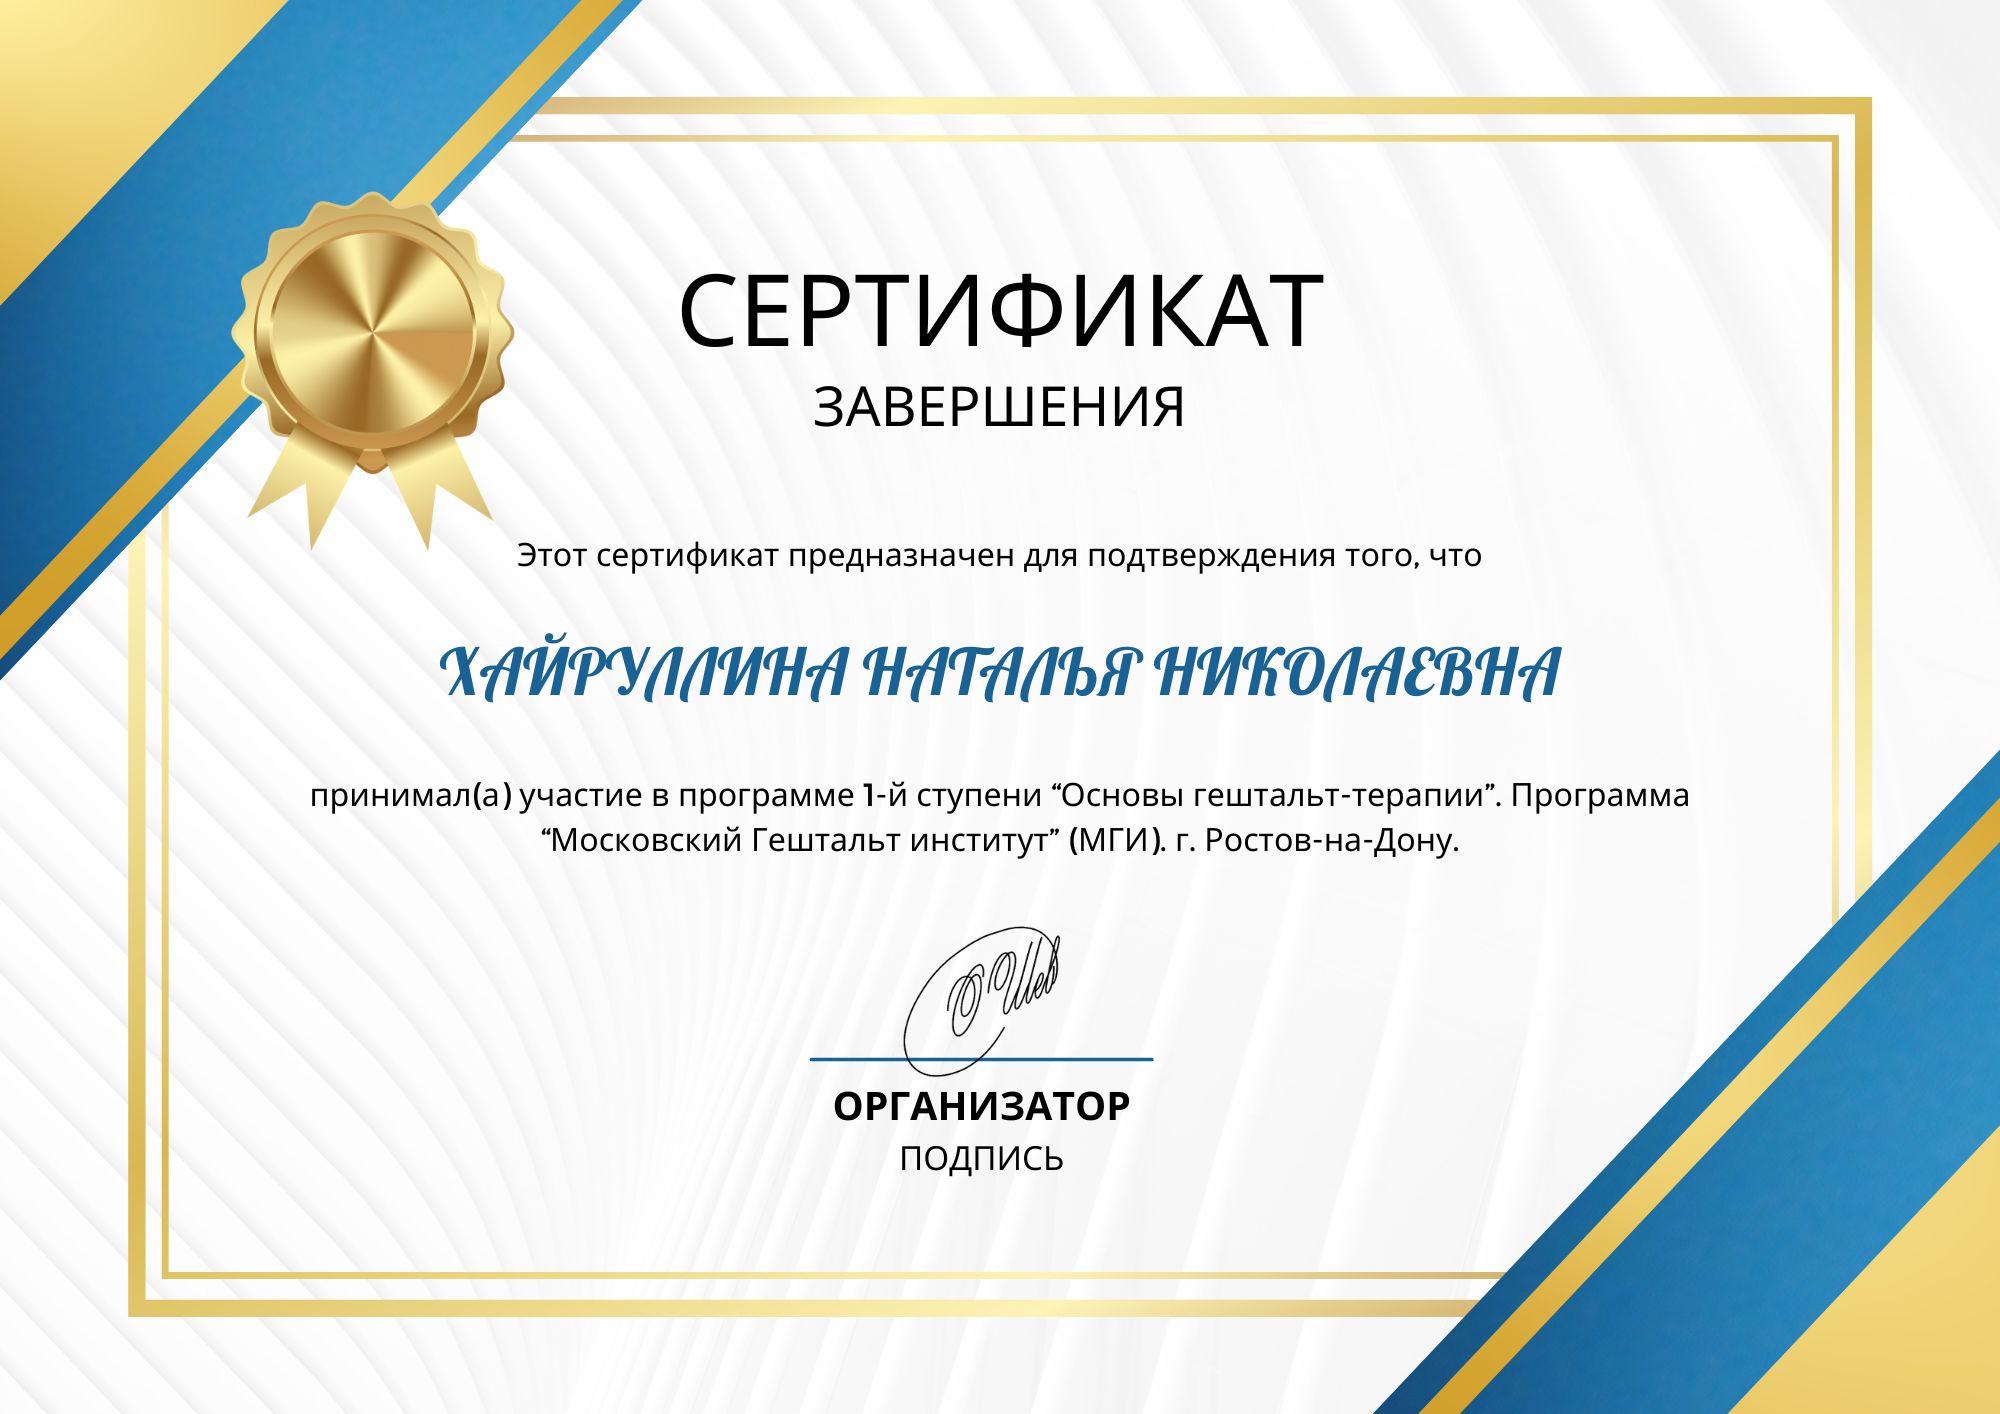 Фотография сертификата Хайруллиной Натальи Николаевны за участия в первой ступени